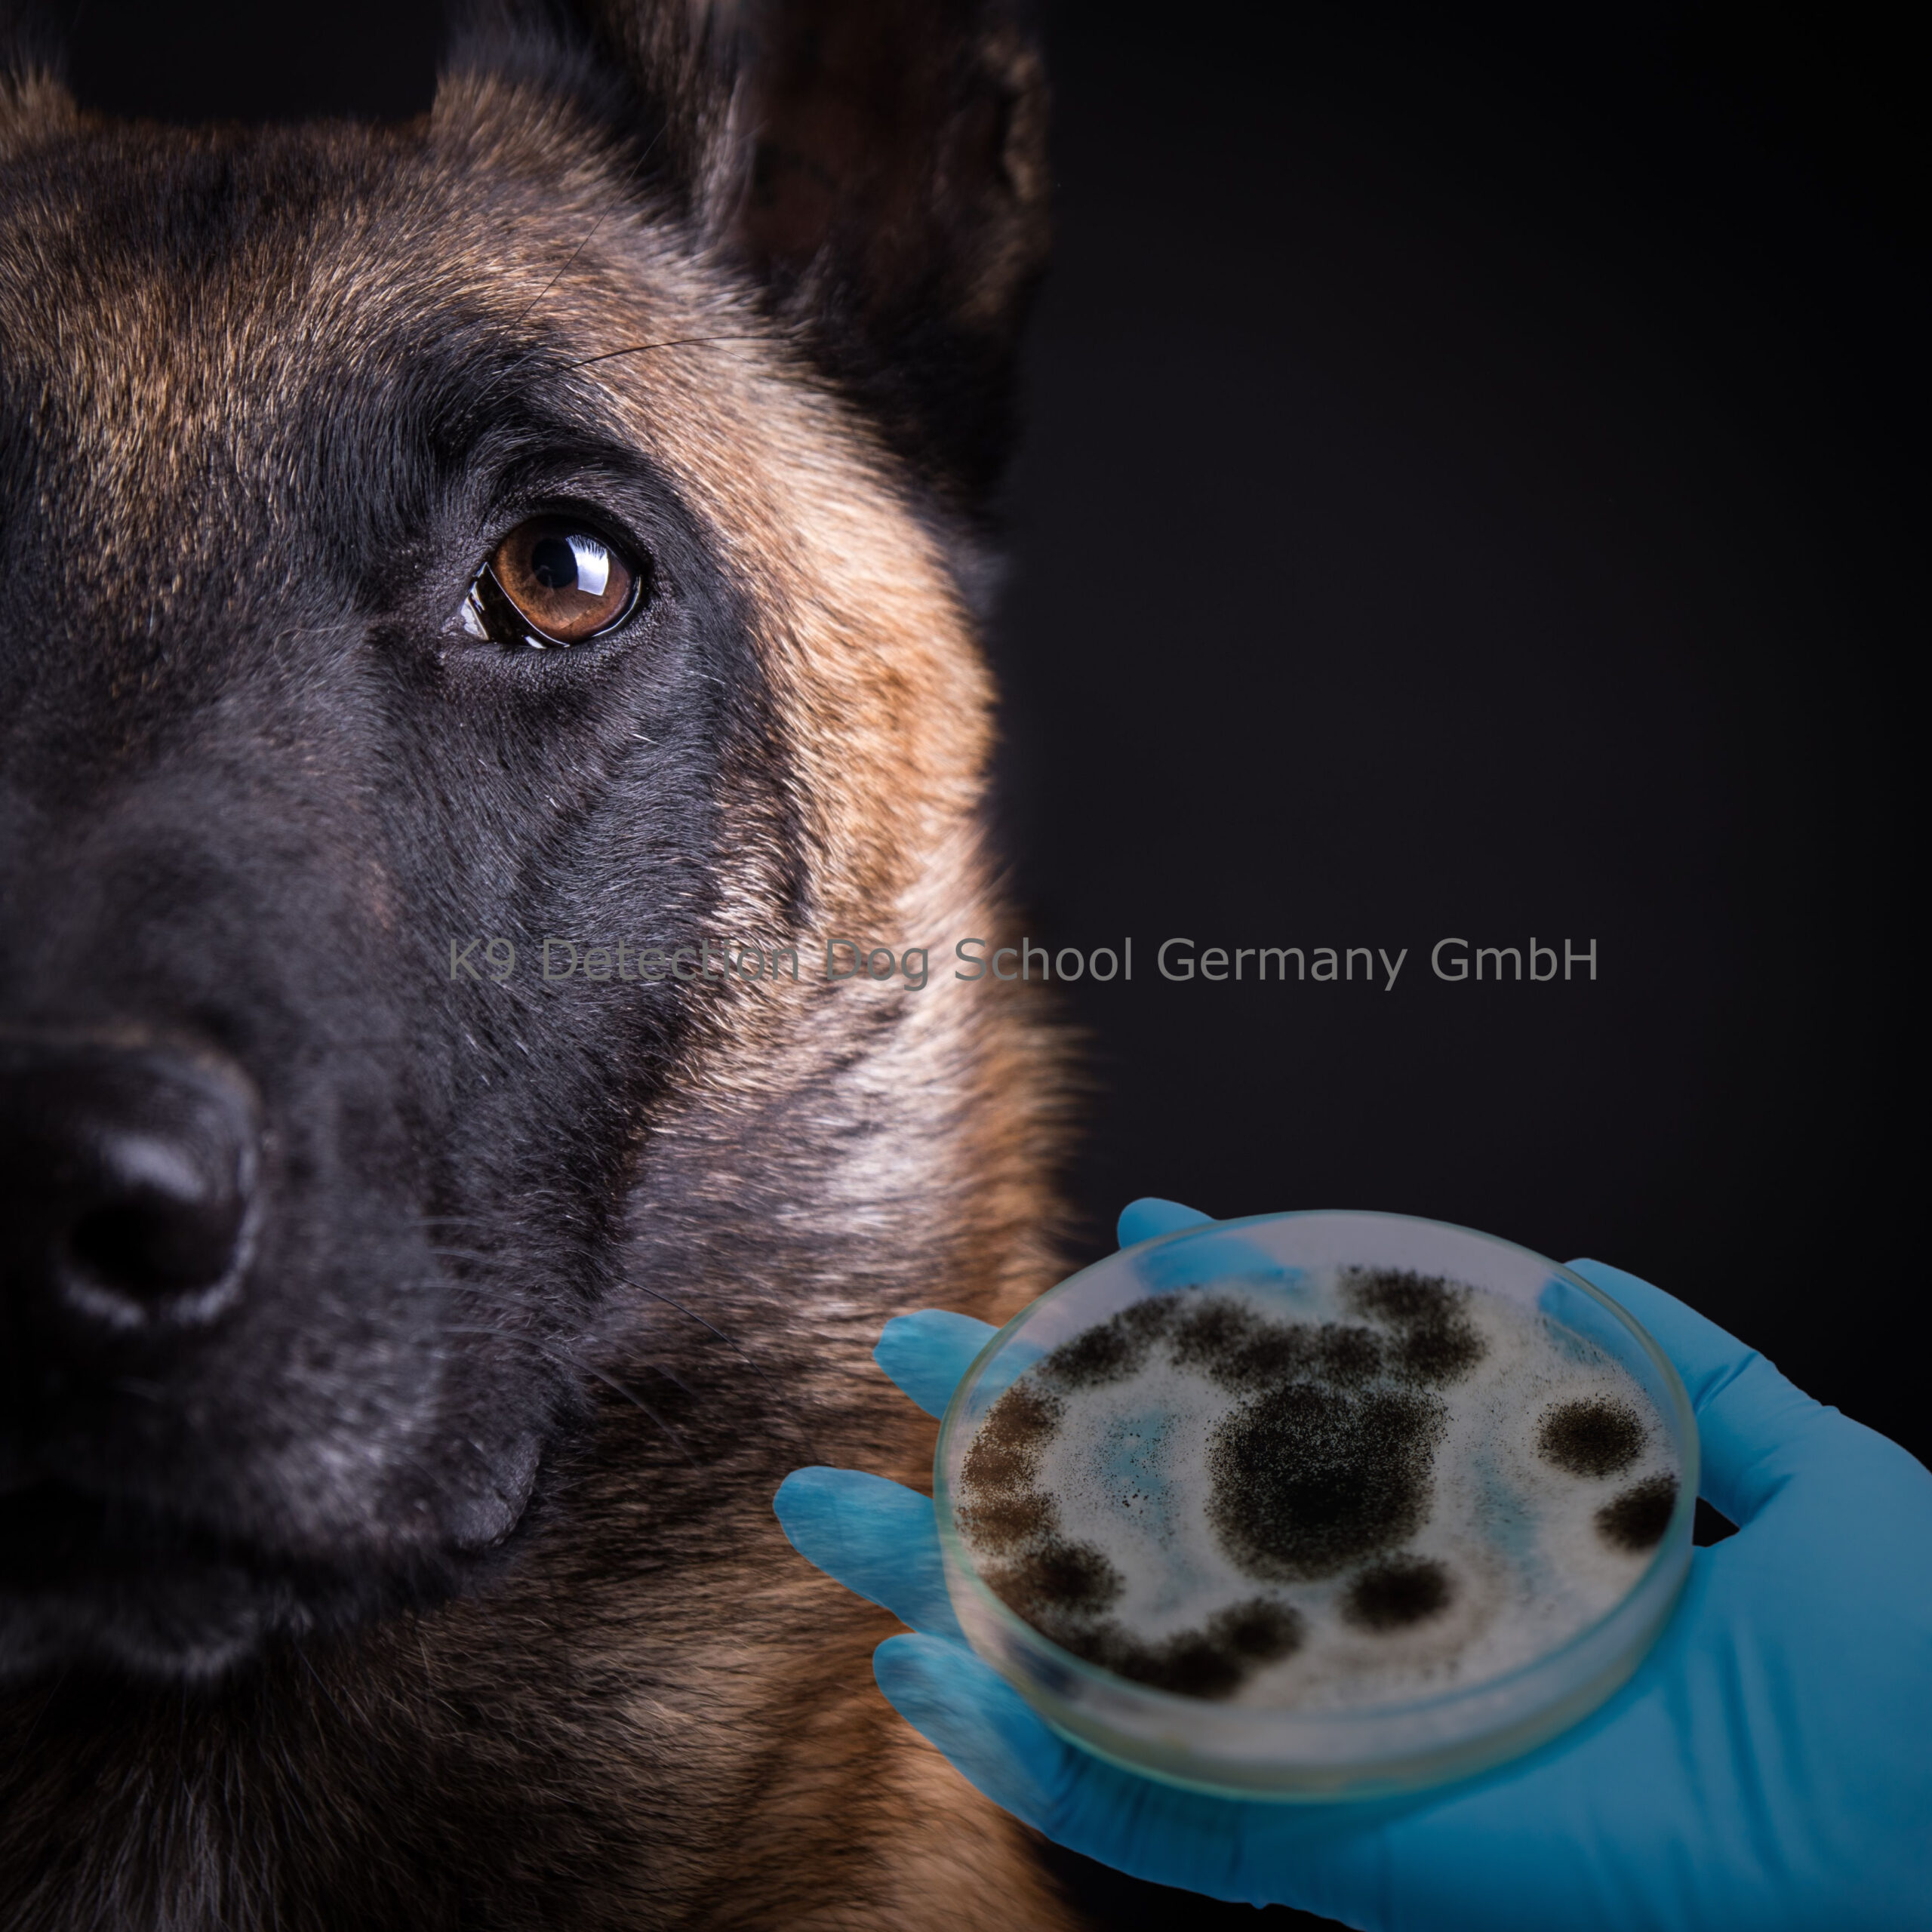 https://spuerhundeschule.de/de/wp-content/uploads/2023/01/Schimmelspuerhund-K9-Detection-Dog-School-Germany-GmbH-scaled.jpg